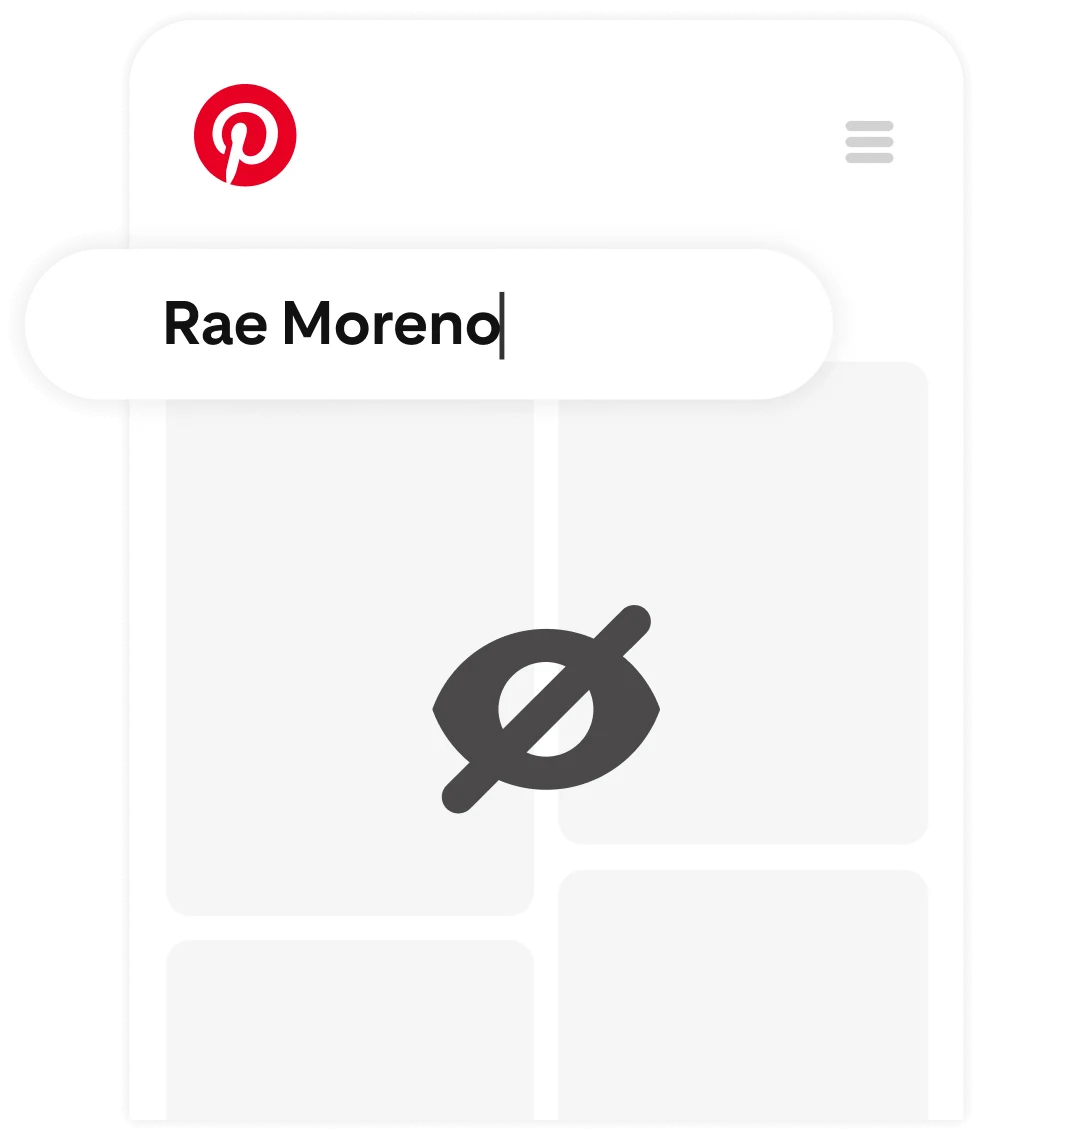 Un feed de Pinterest privado con el nombre "Rae Moreno" escrito en la barra de búsqueda.